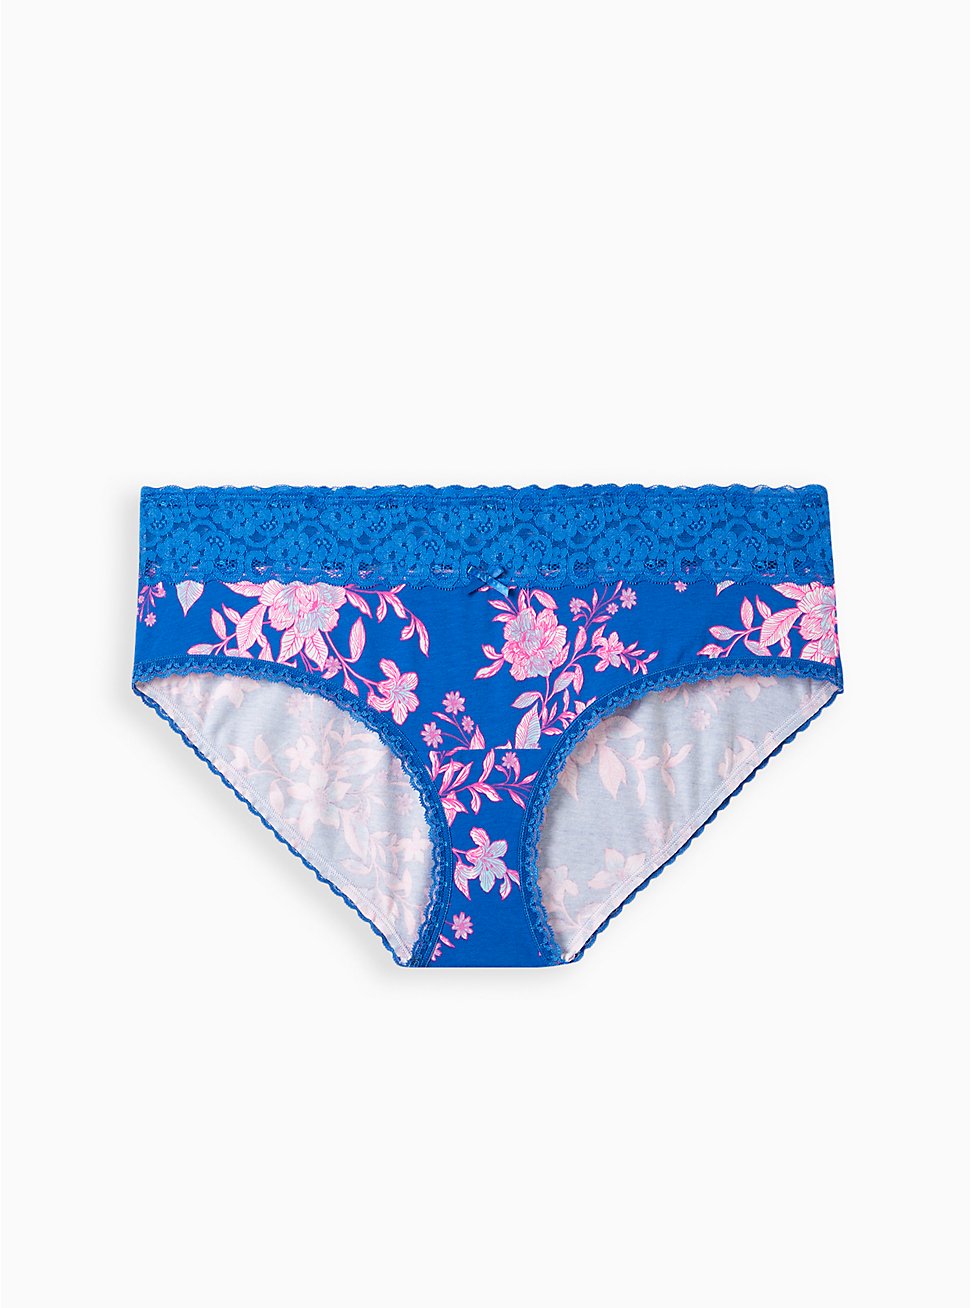 Cotton Mid-Rise Hipster Lace Trim Panty, LILLIAN FLORAL BLUE, hi-res